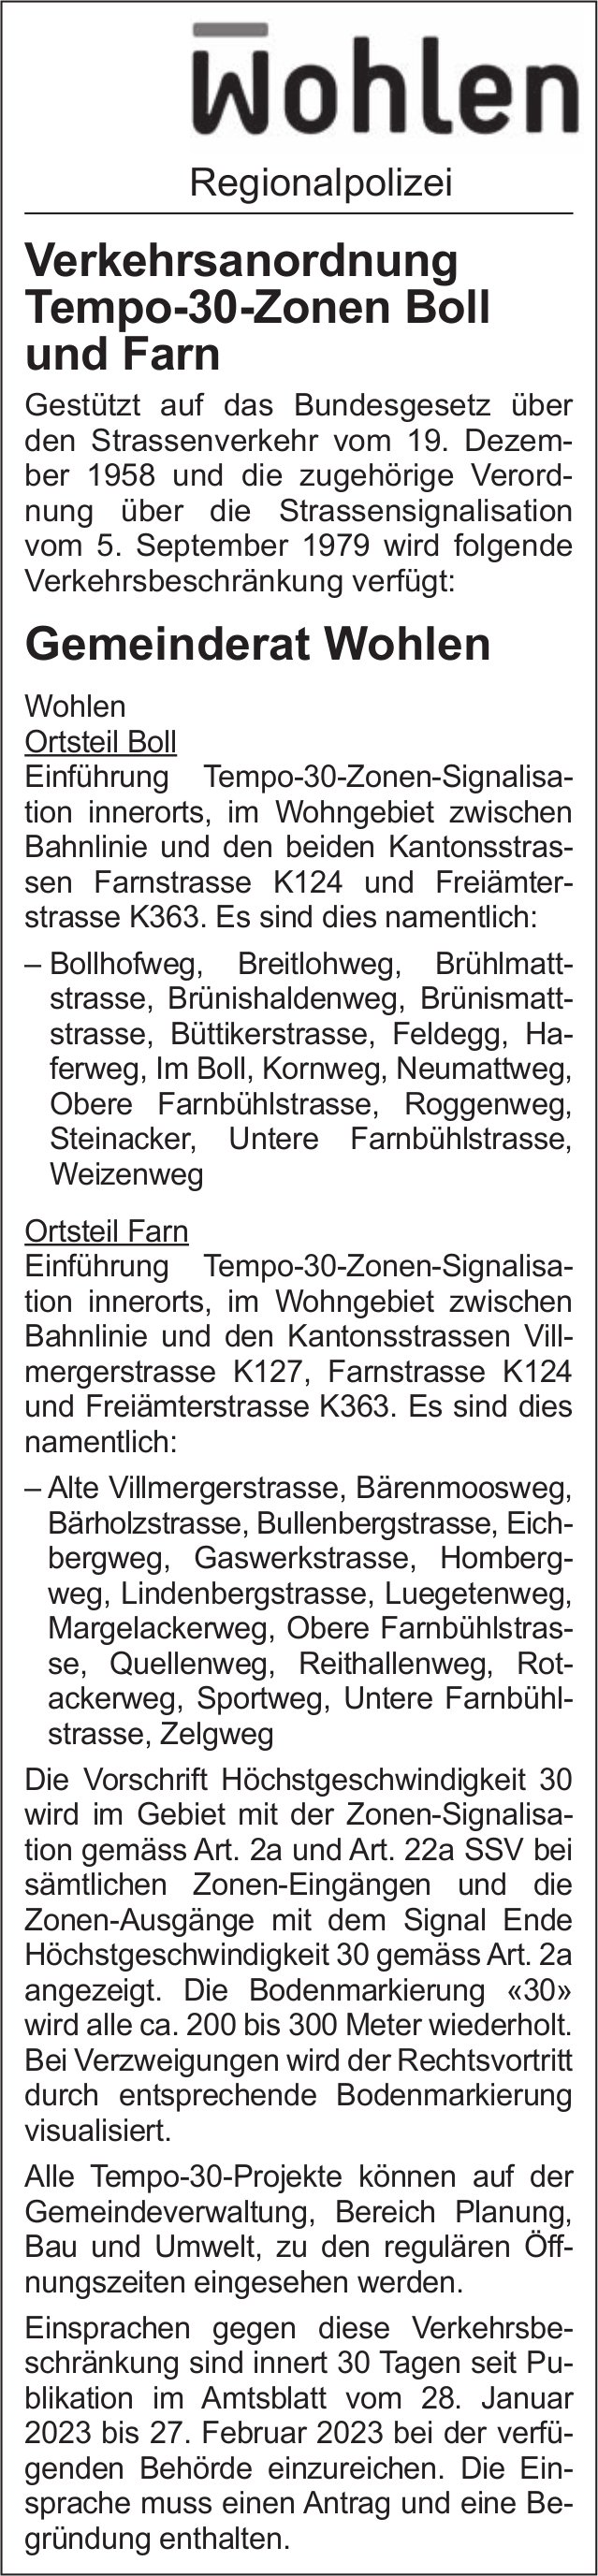 Wohlen - Verkehrsanordnung Tempo-30-Zonen Boll und Farn